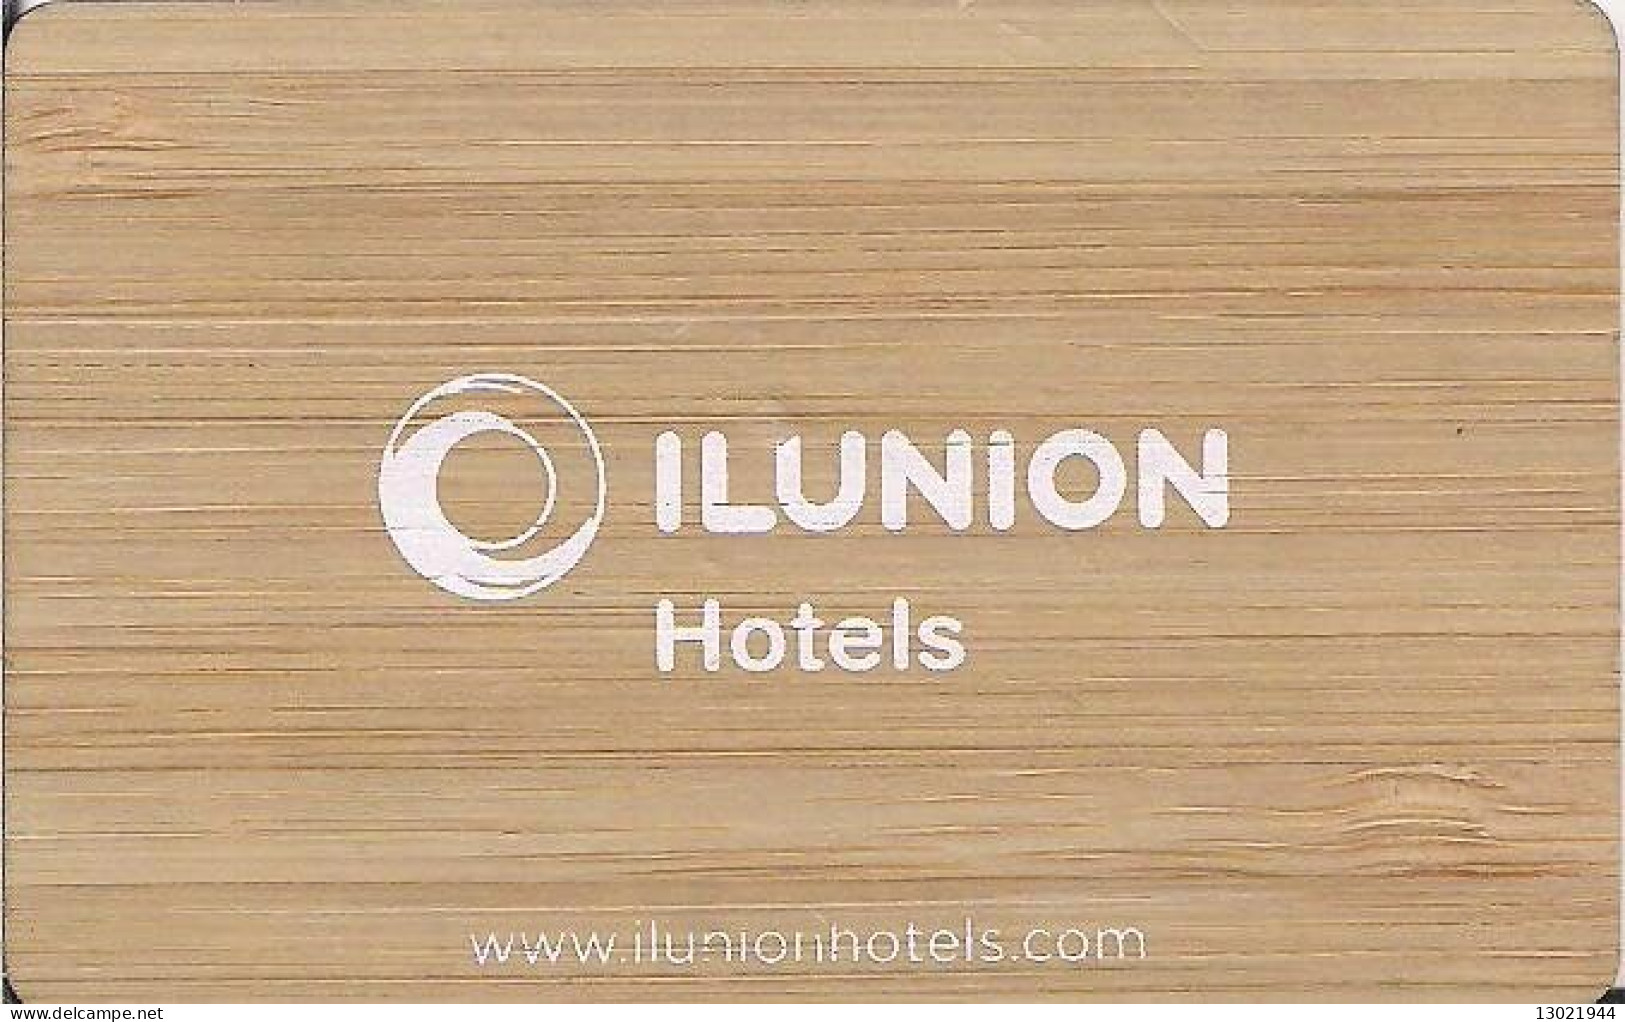 SPAGNA  KEY HOTEL   Ilunión Hotels - Bienvenido A Un Mundo Diferente  -  Wooden Card. - Hotel Keycards